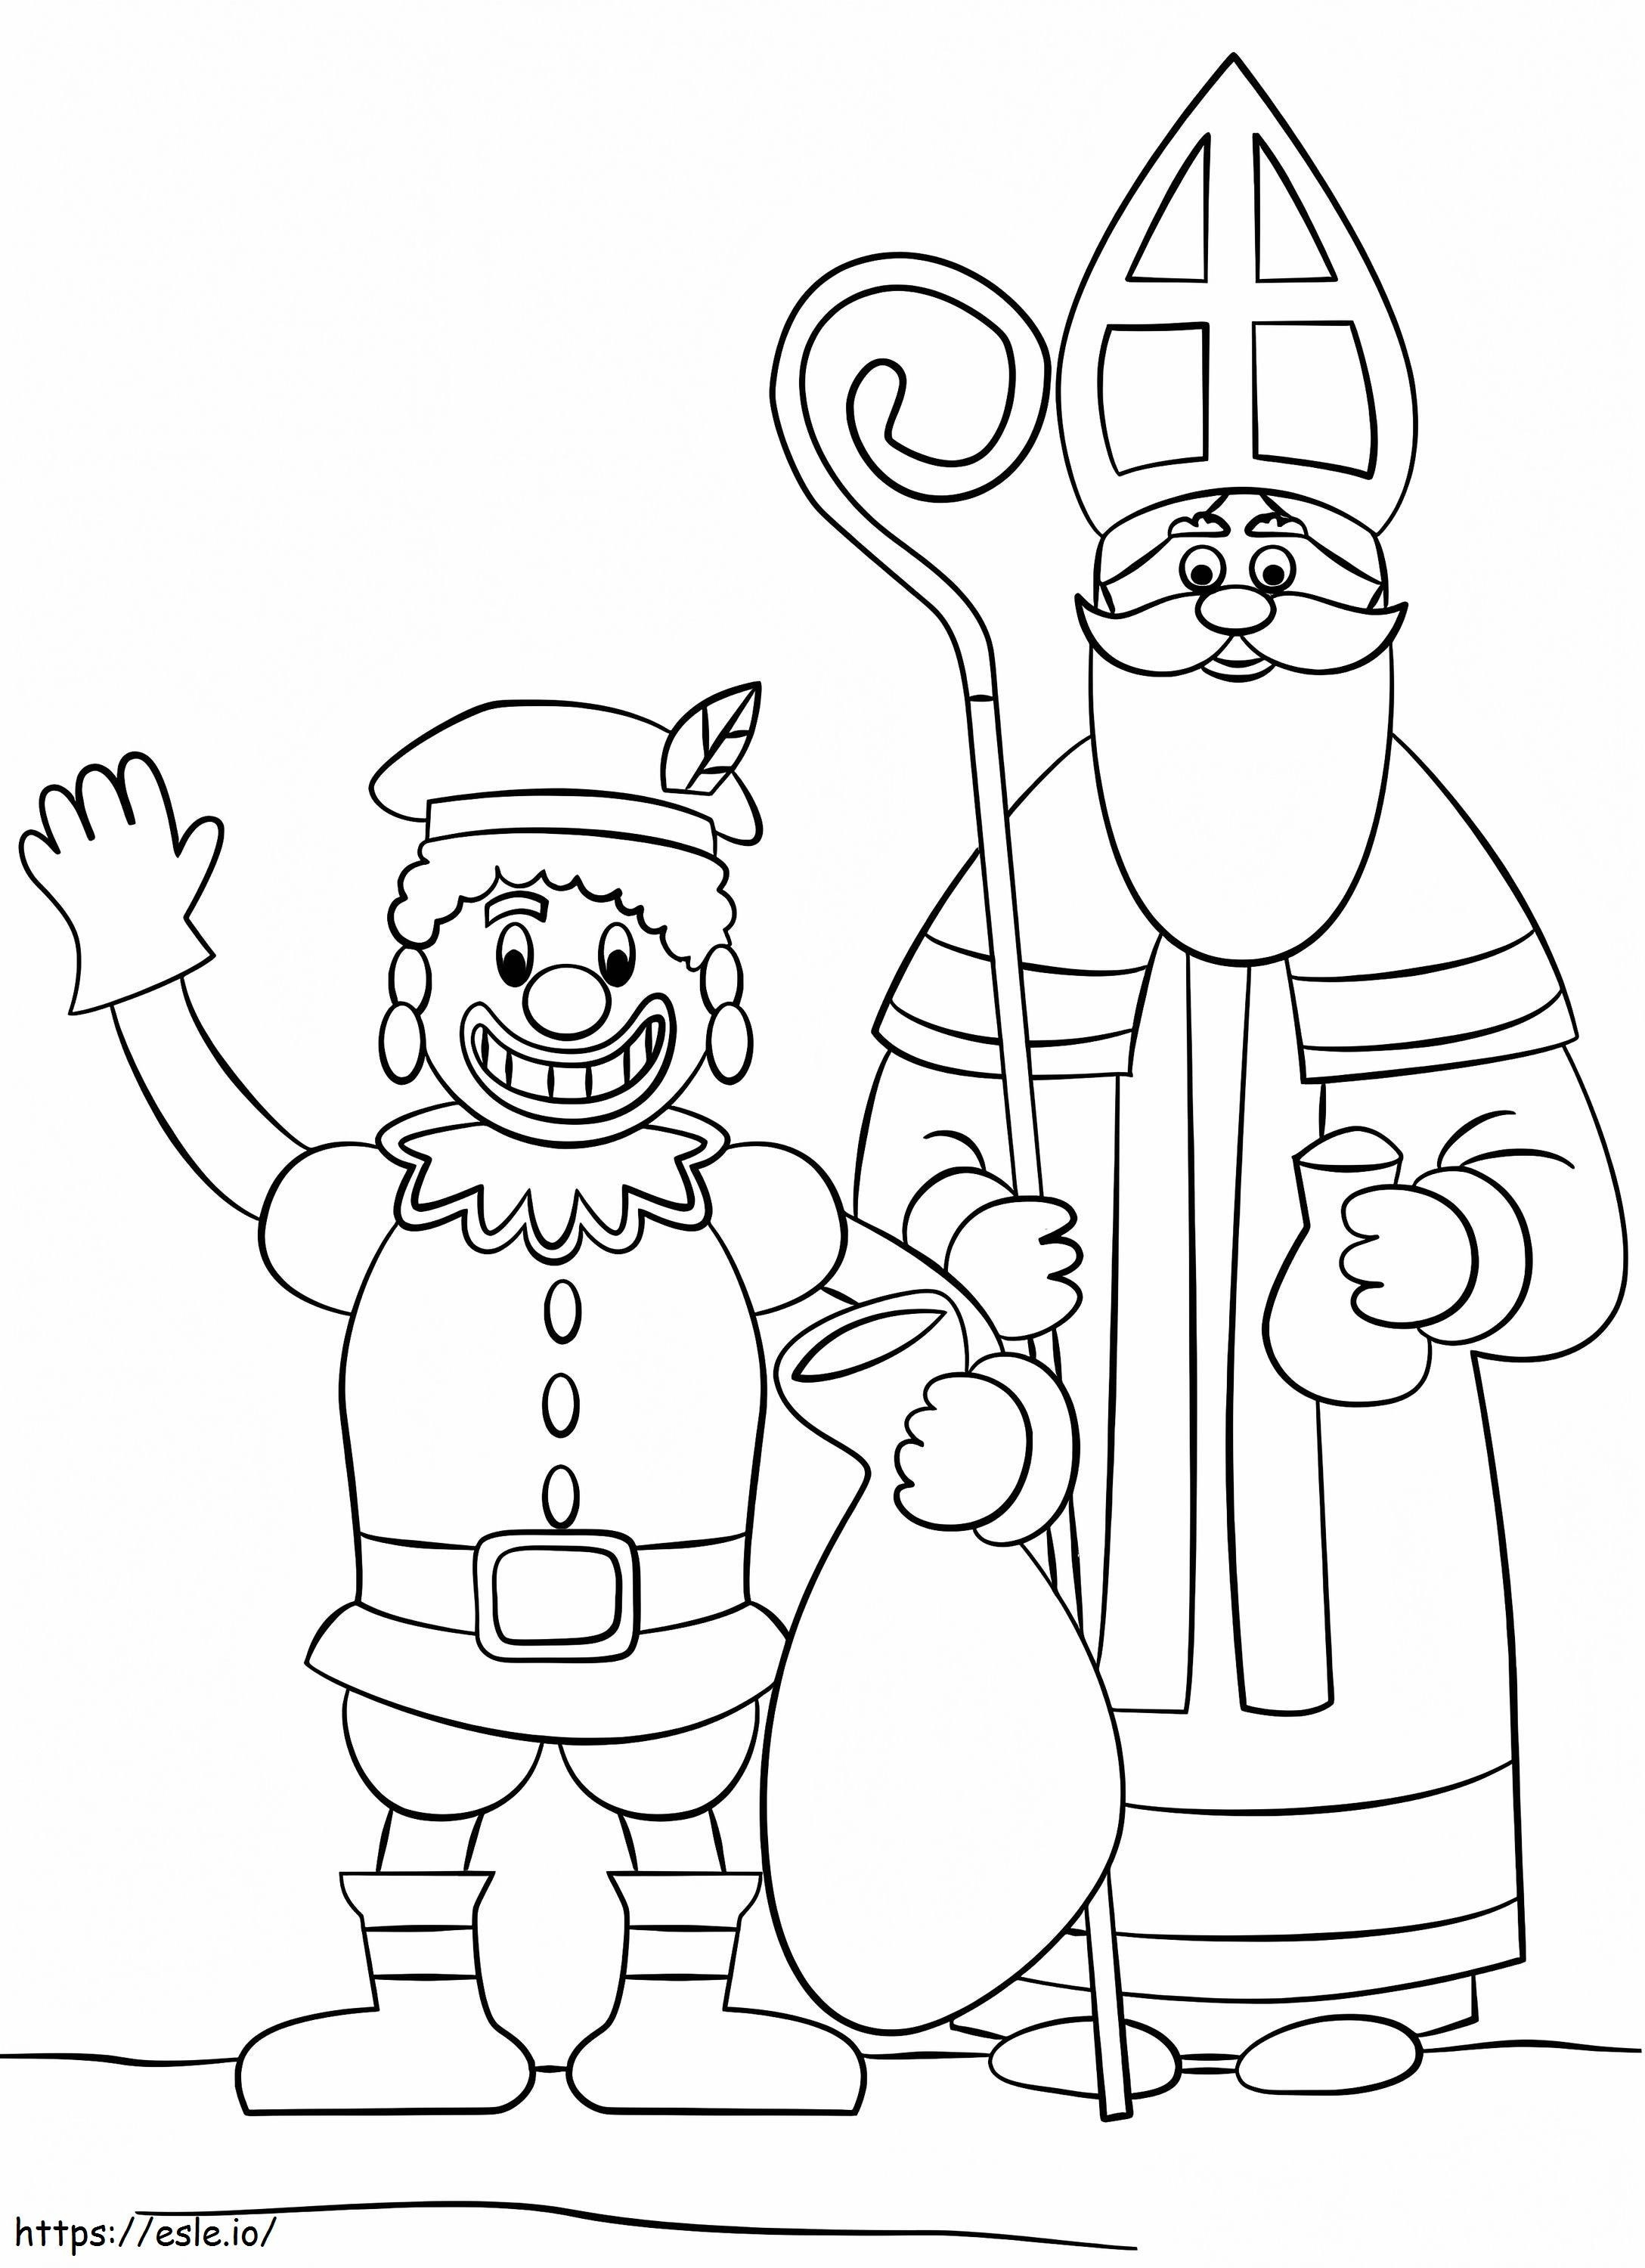 Zwarte Piet i Święty Mikołaj kolorowanka